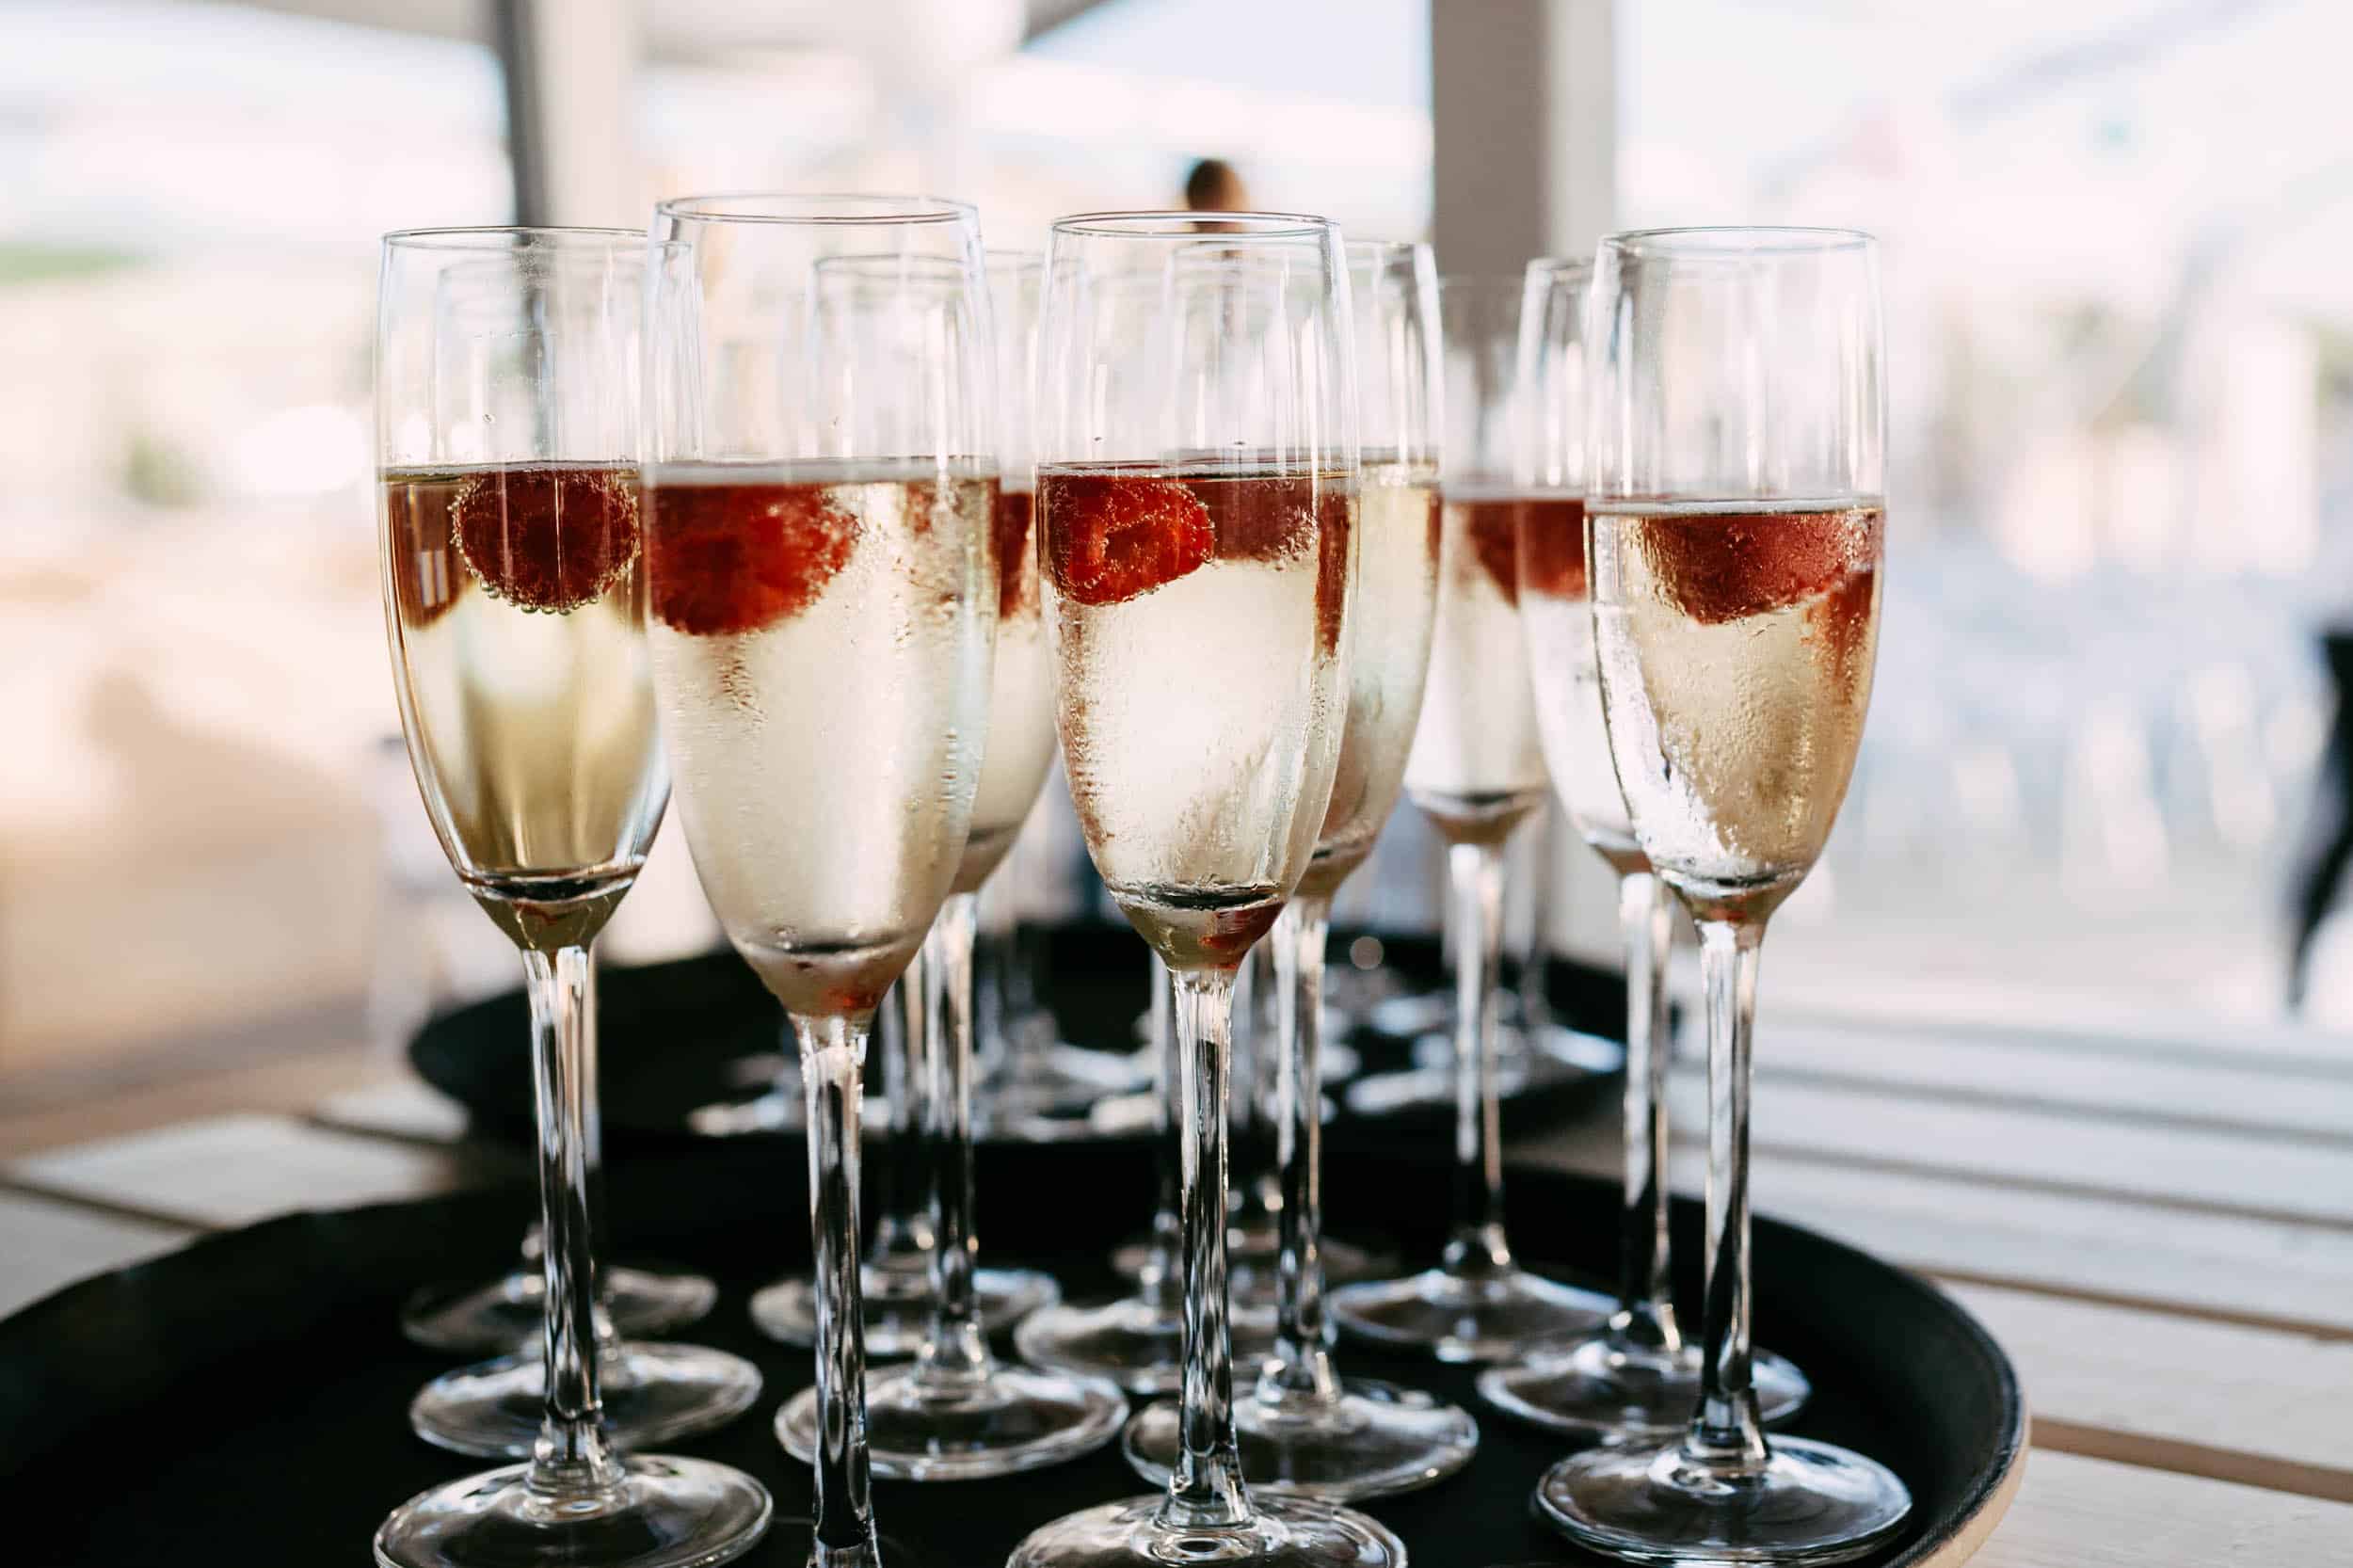 Champagnefluiten met frambozen op een dienblad.